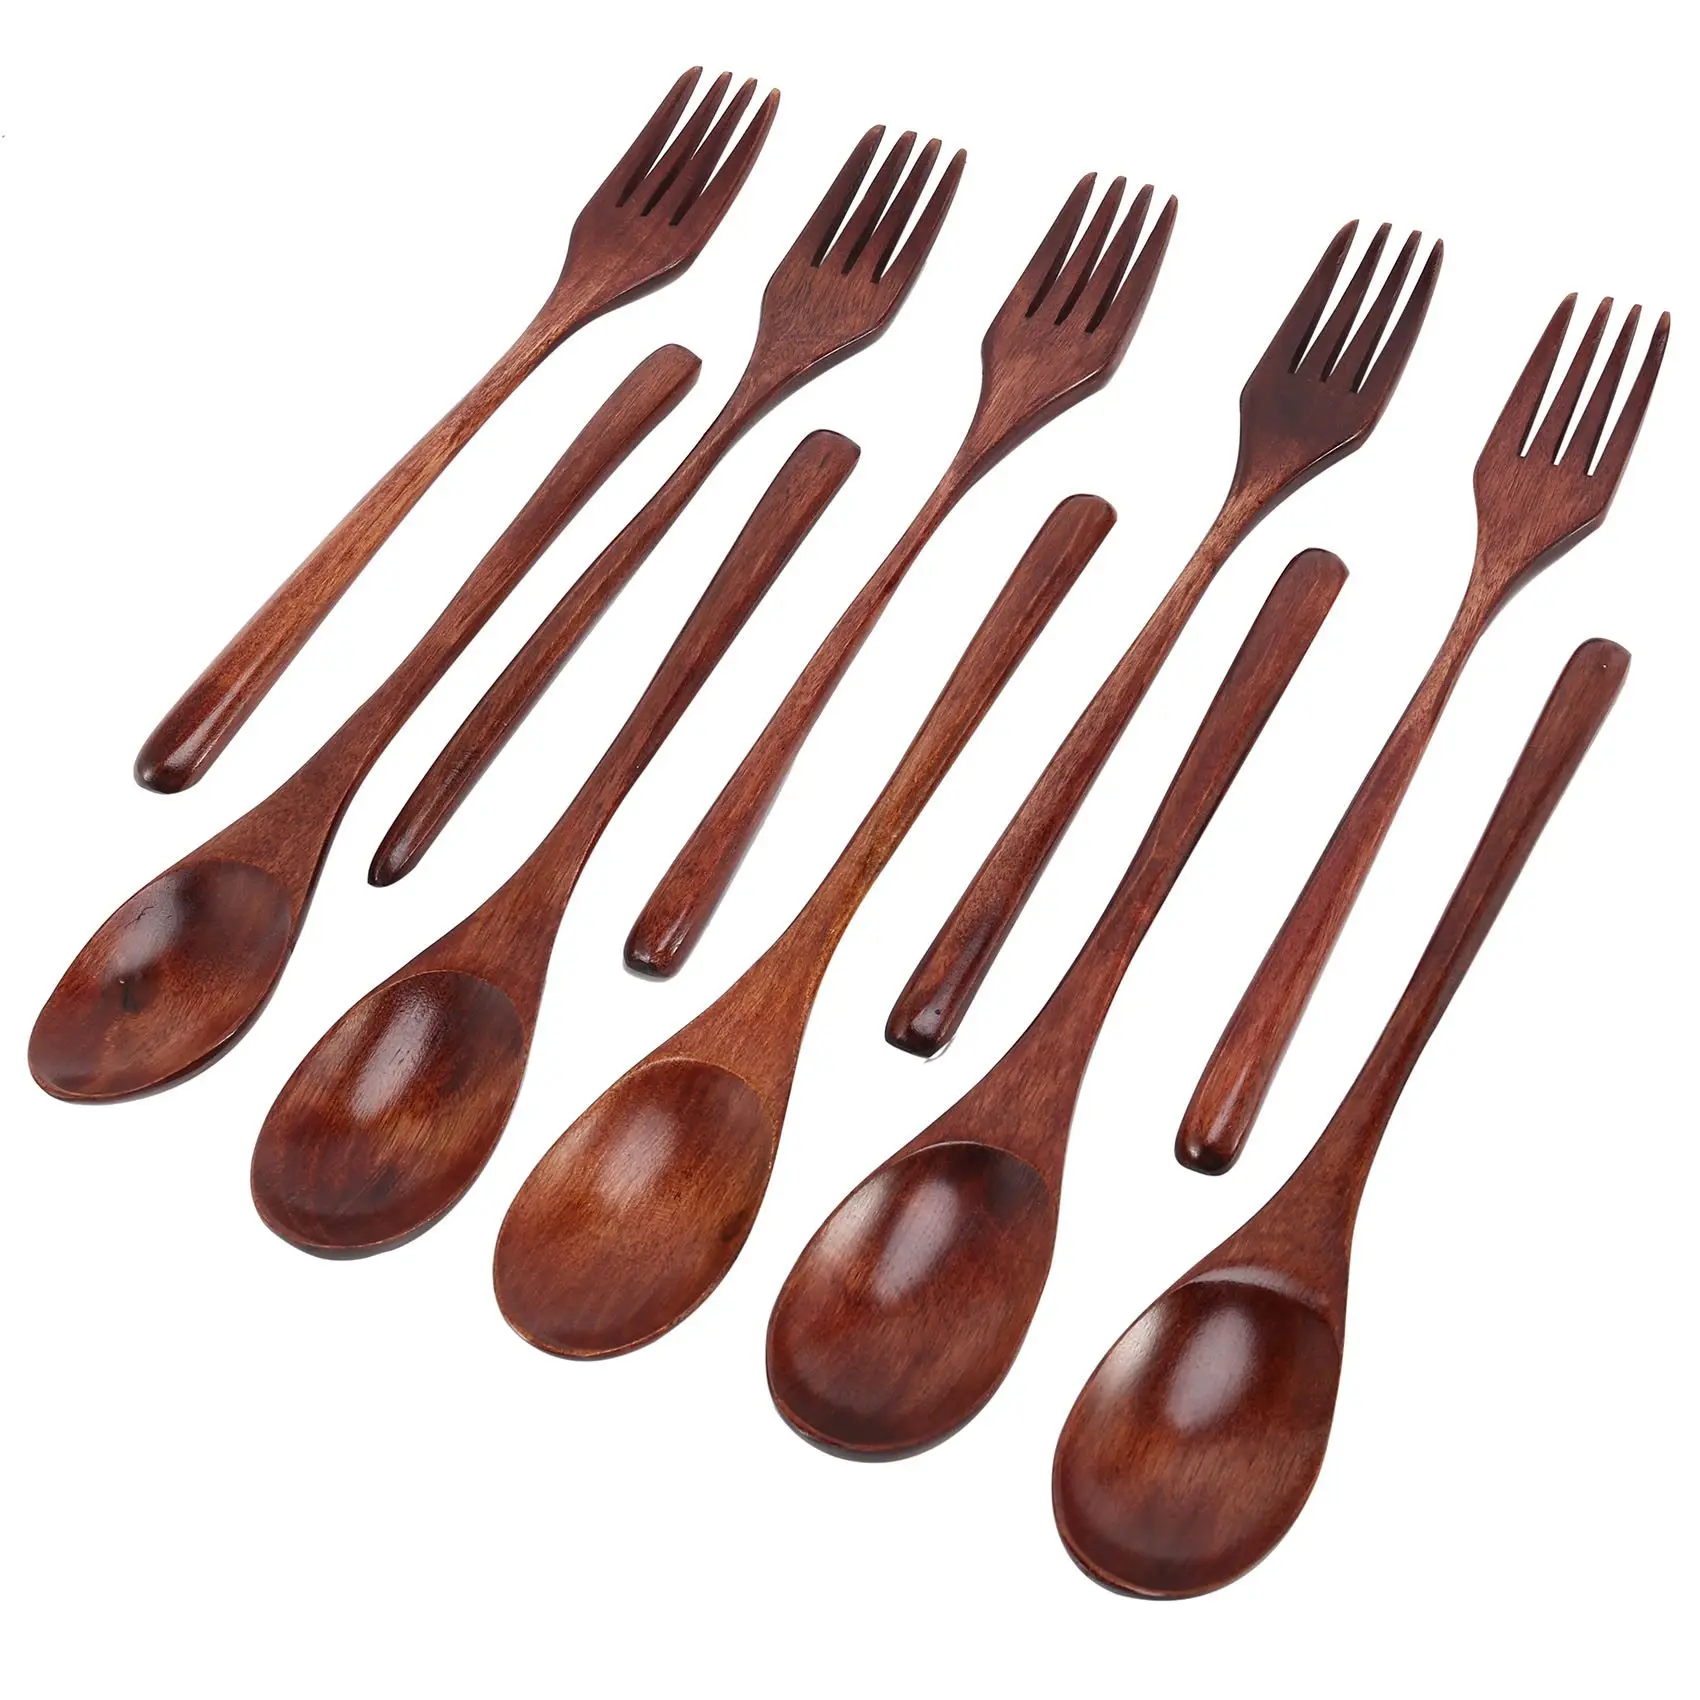 

10 Pcs Wooden Spoons Forks Set Wooden Utensil Set Reusable Natural Wood Flatware Set for Cooking Stirring Eating